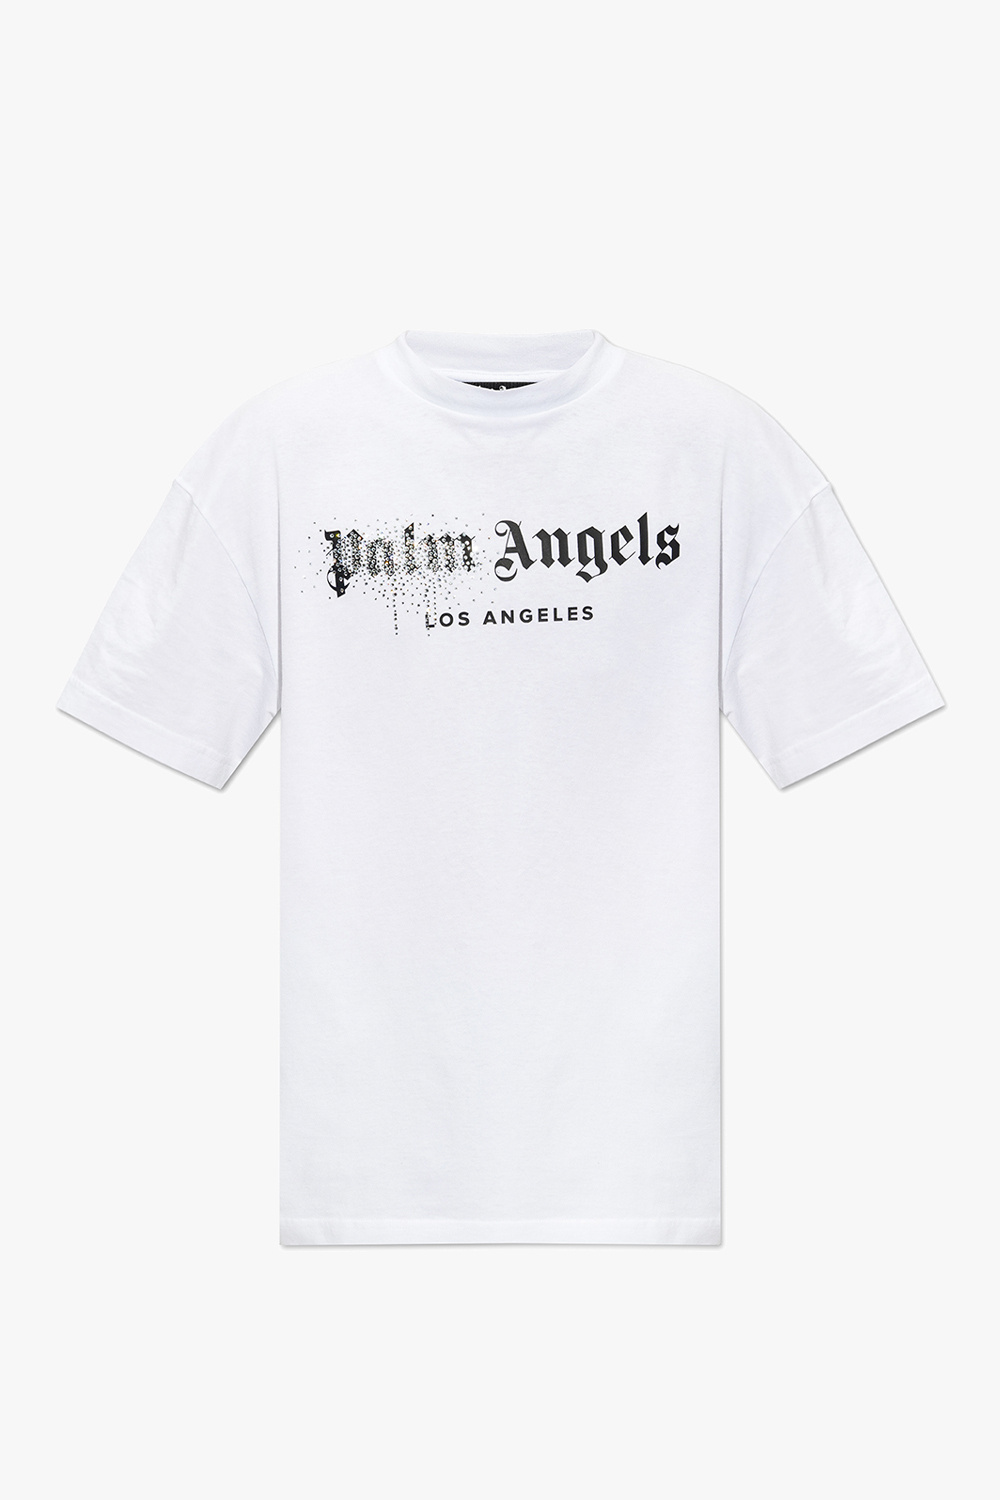 Palm Angels Tshirt -  Canada